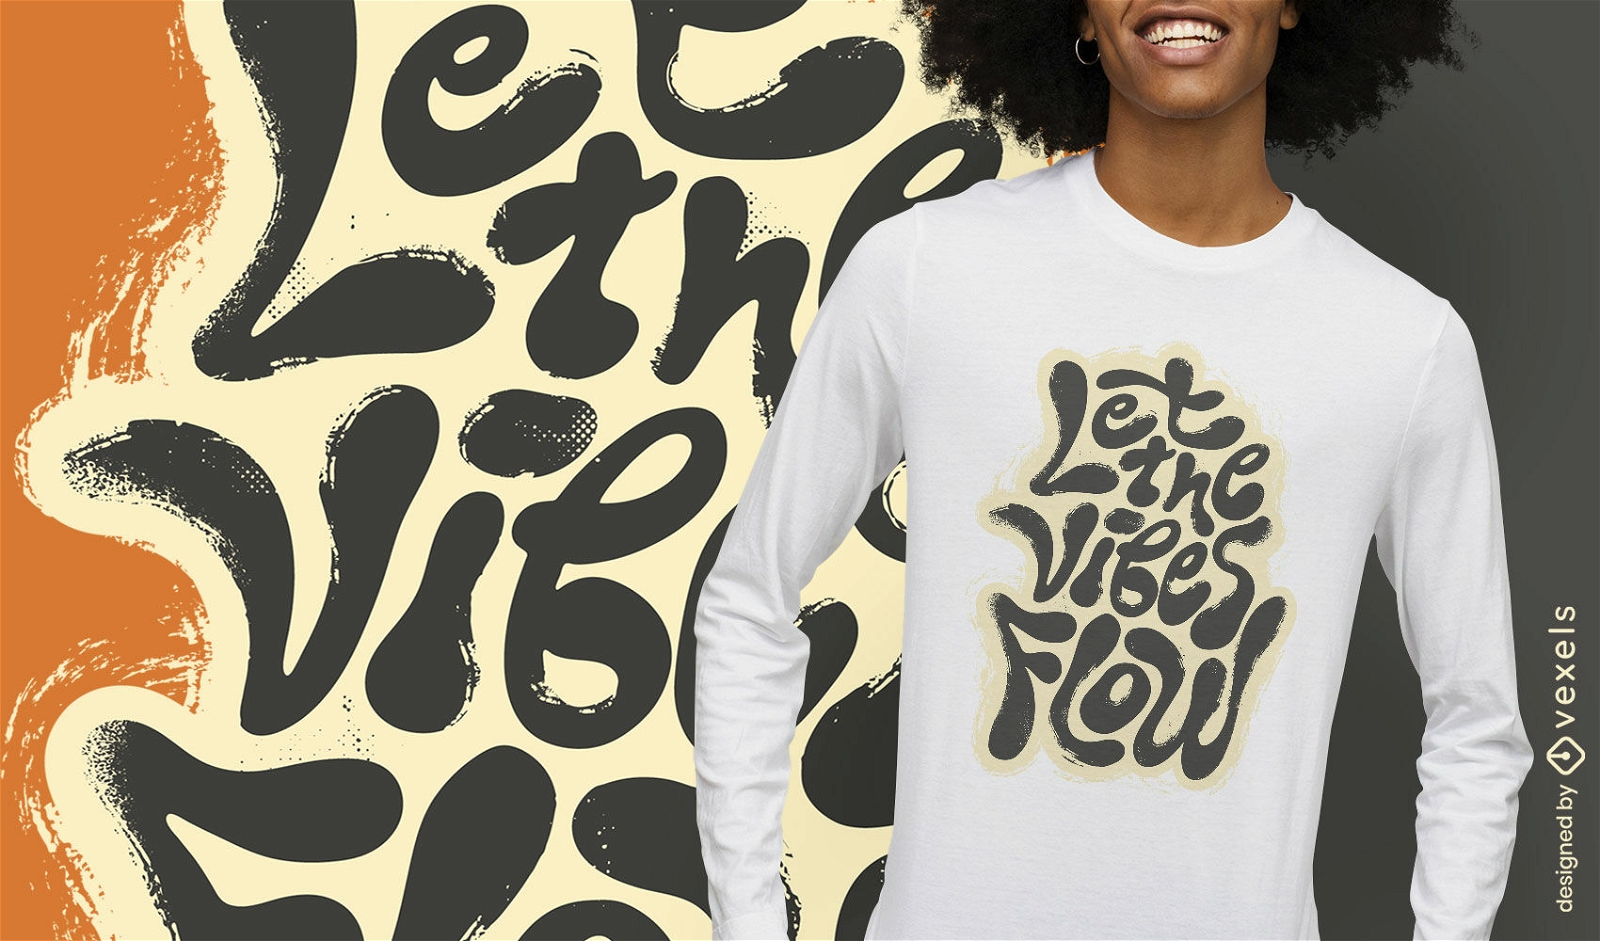 Lassen Sie die Stimmung fließen Zitat T-Shirt-Design